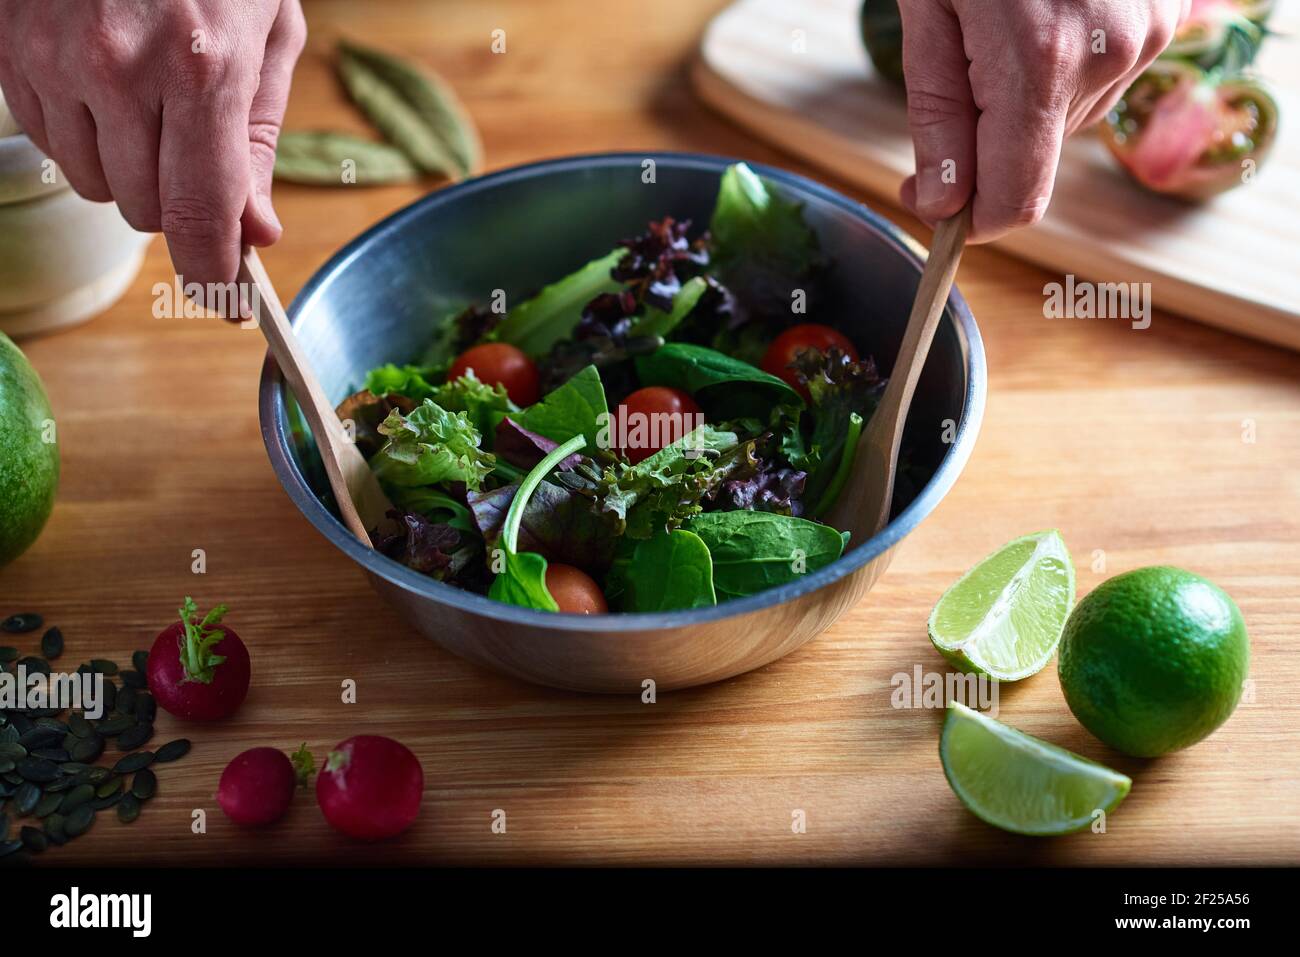 Menschenhände rühren einen Salat in eine Metallschüssel, mit etwas Holzbesteck, auf einem Holztisch in einer Küche. In der gastronomischen Fotografie können Sie radis sehen Stockfoto